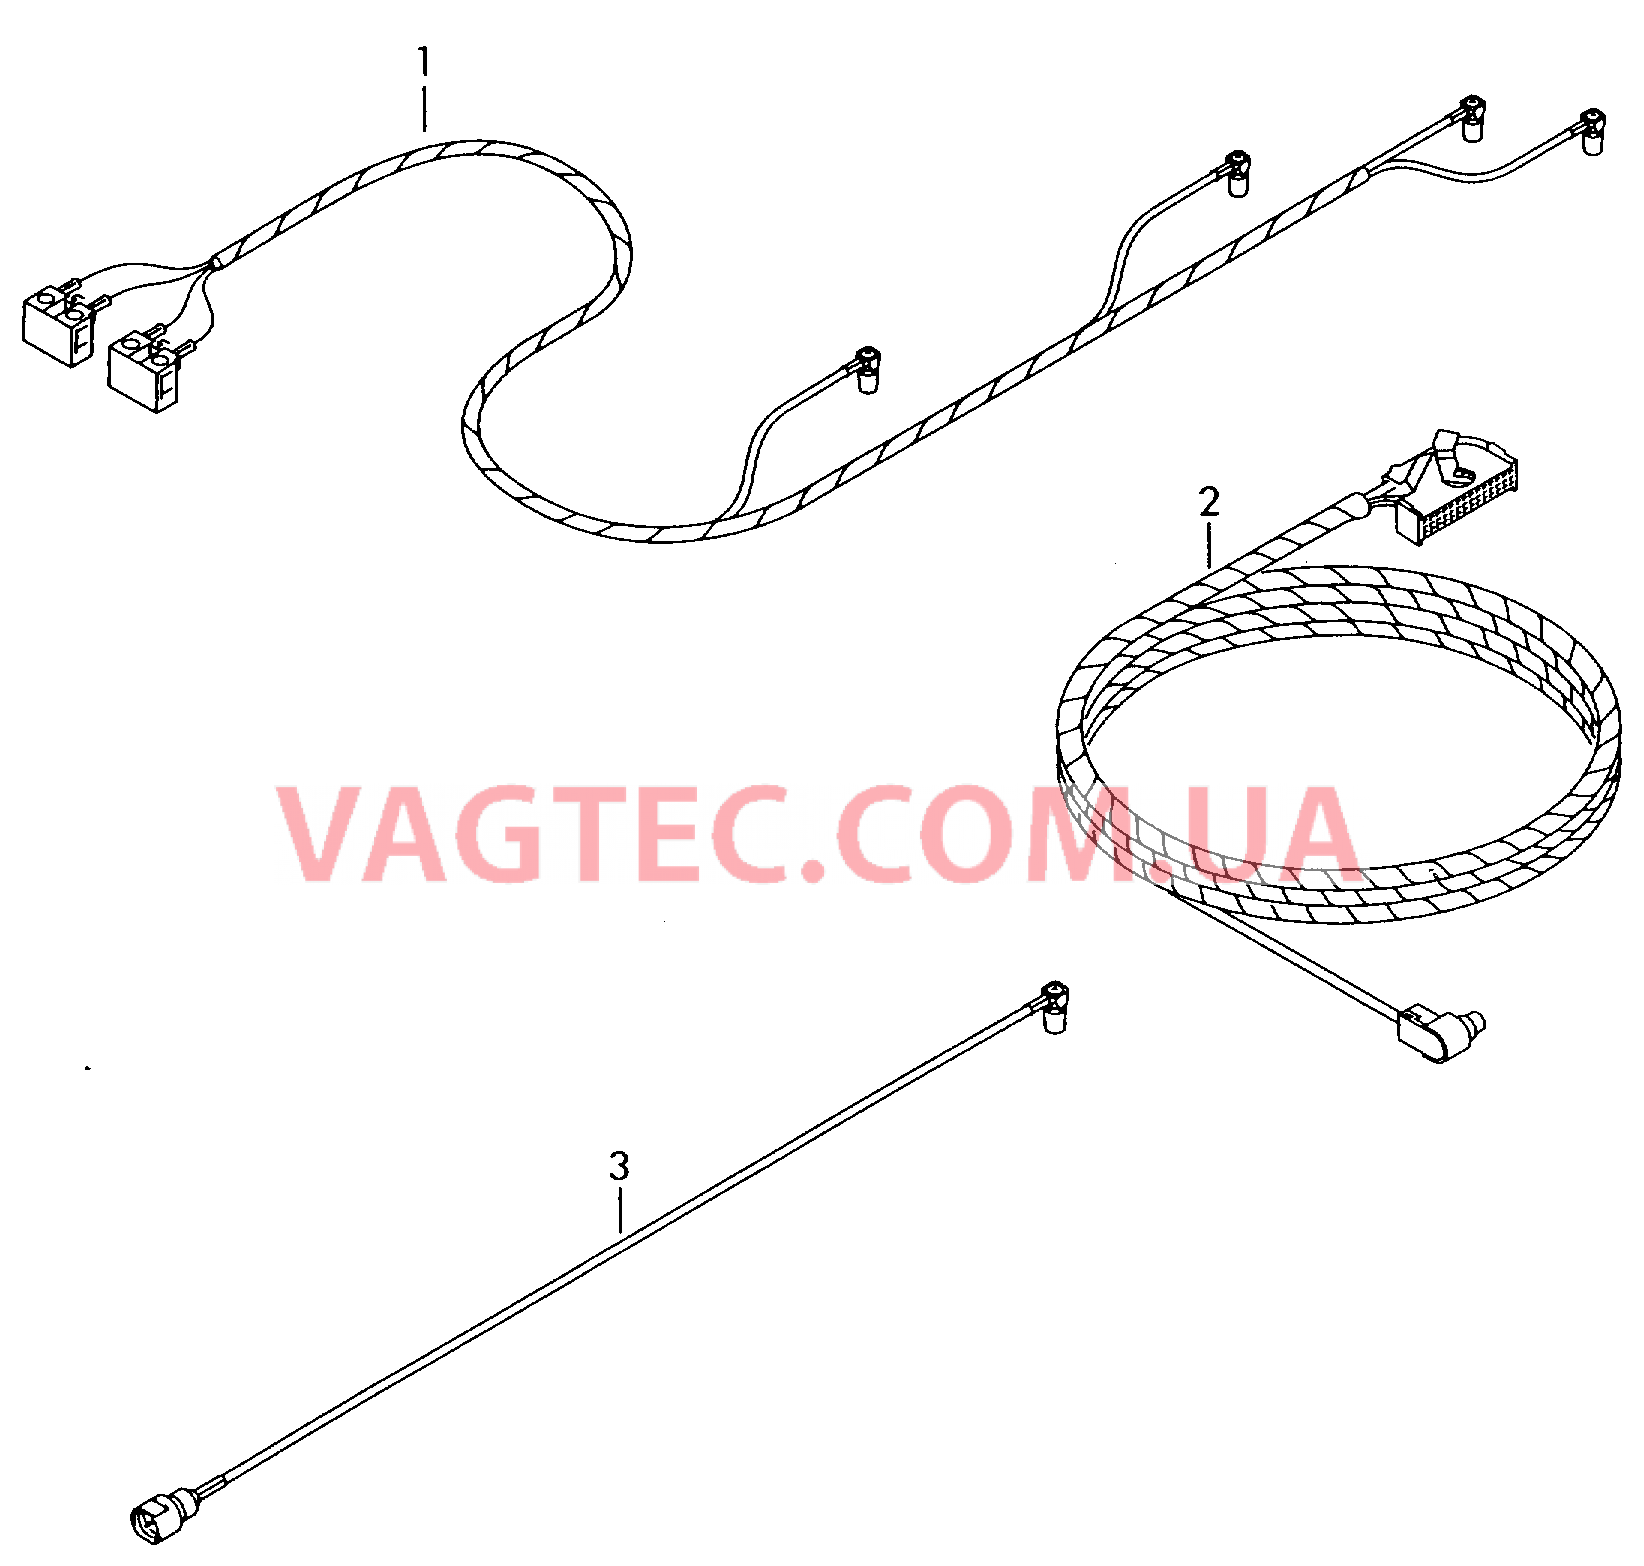 Жгут проводов системы навигации  Антенный кабель Жгут проводов для а/м с комплектом для подключения телефона         также см. иллюстрацию:  для VOLKSWAGEN Passat 2005